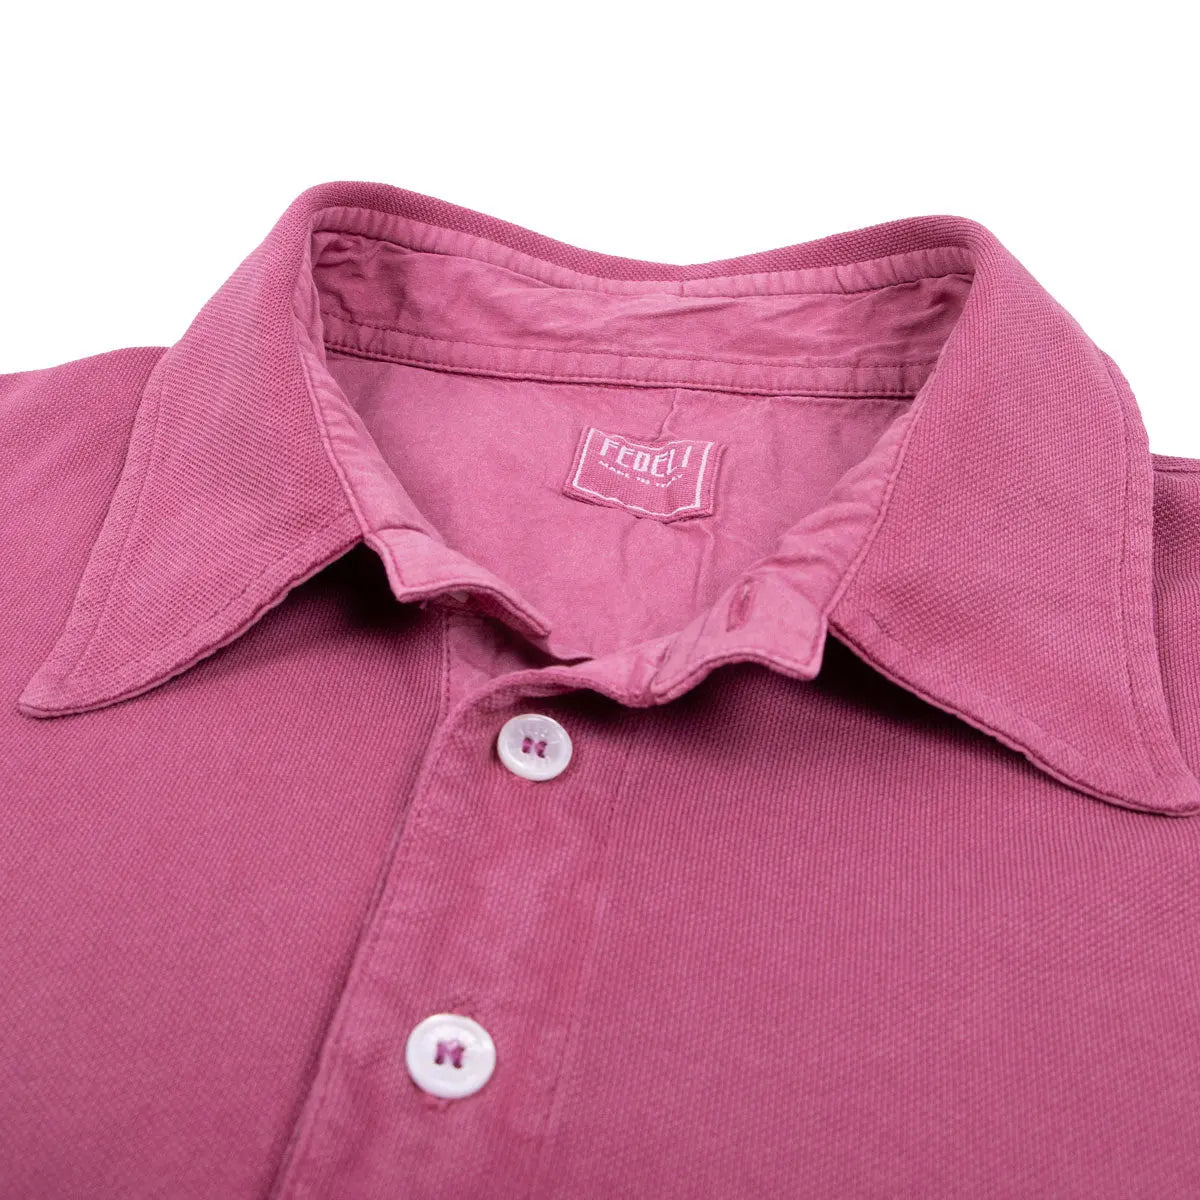 Cotton Piqué Polo Shirt Raspberry S/S POLOS FEDELI   